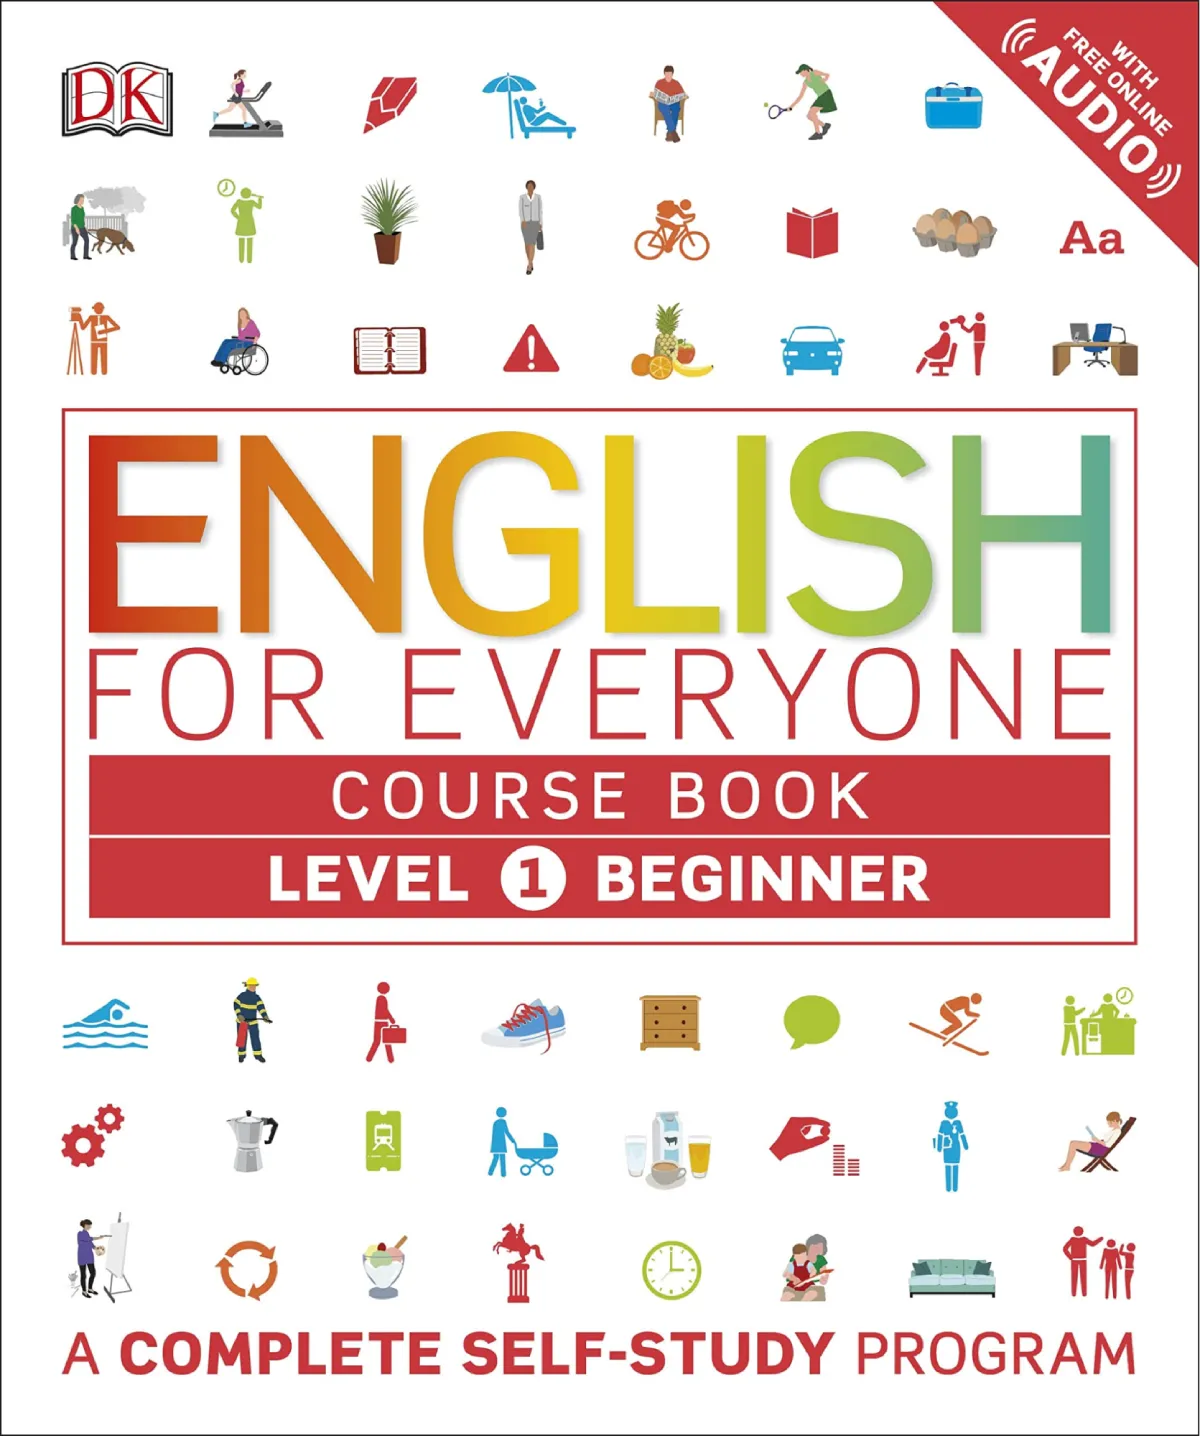 Beli Buku untuk Belajar Bahasa Inggris